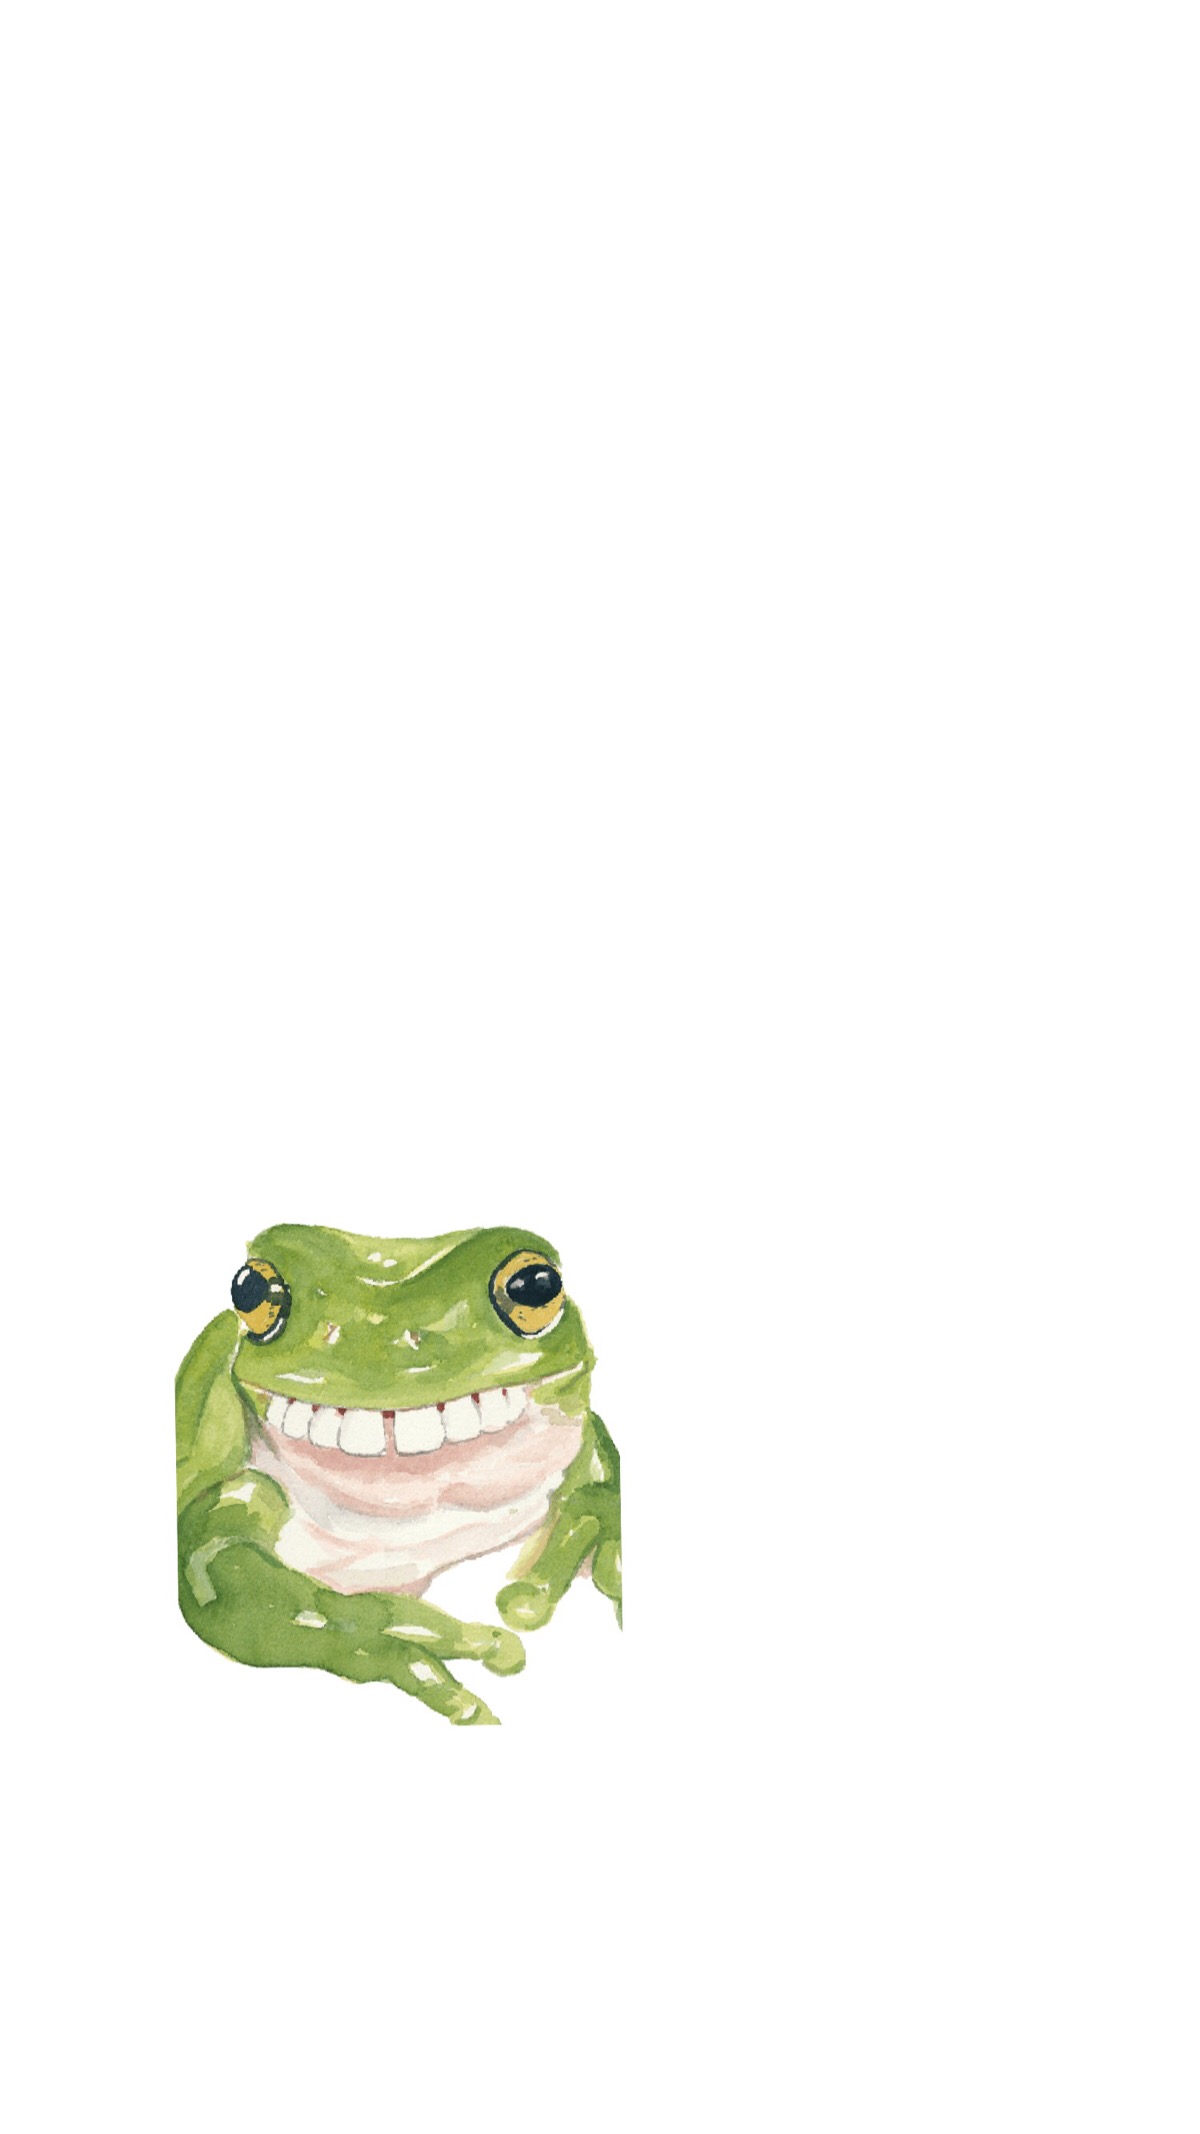 我是一只长牙的青蛙～呼噜噜噜噜